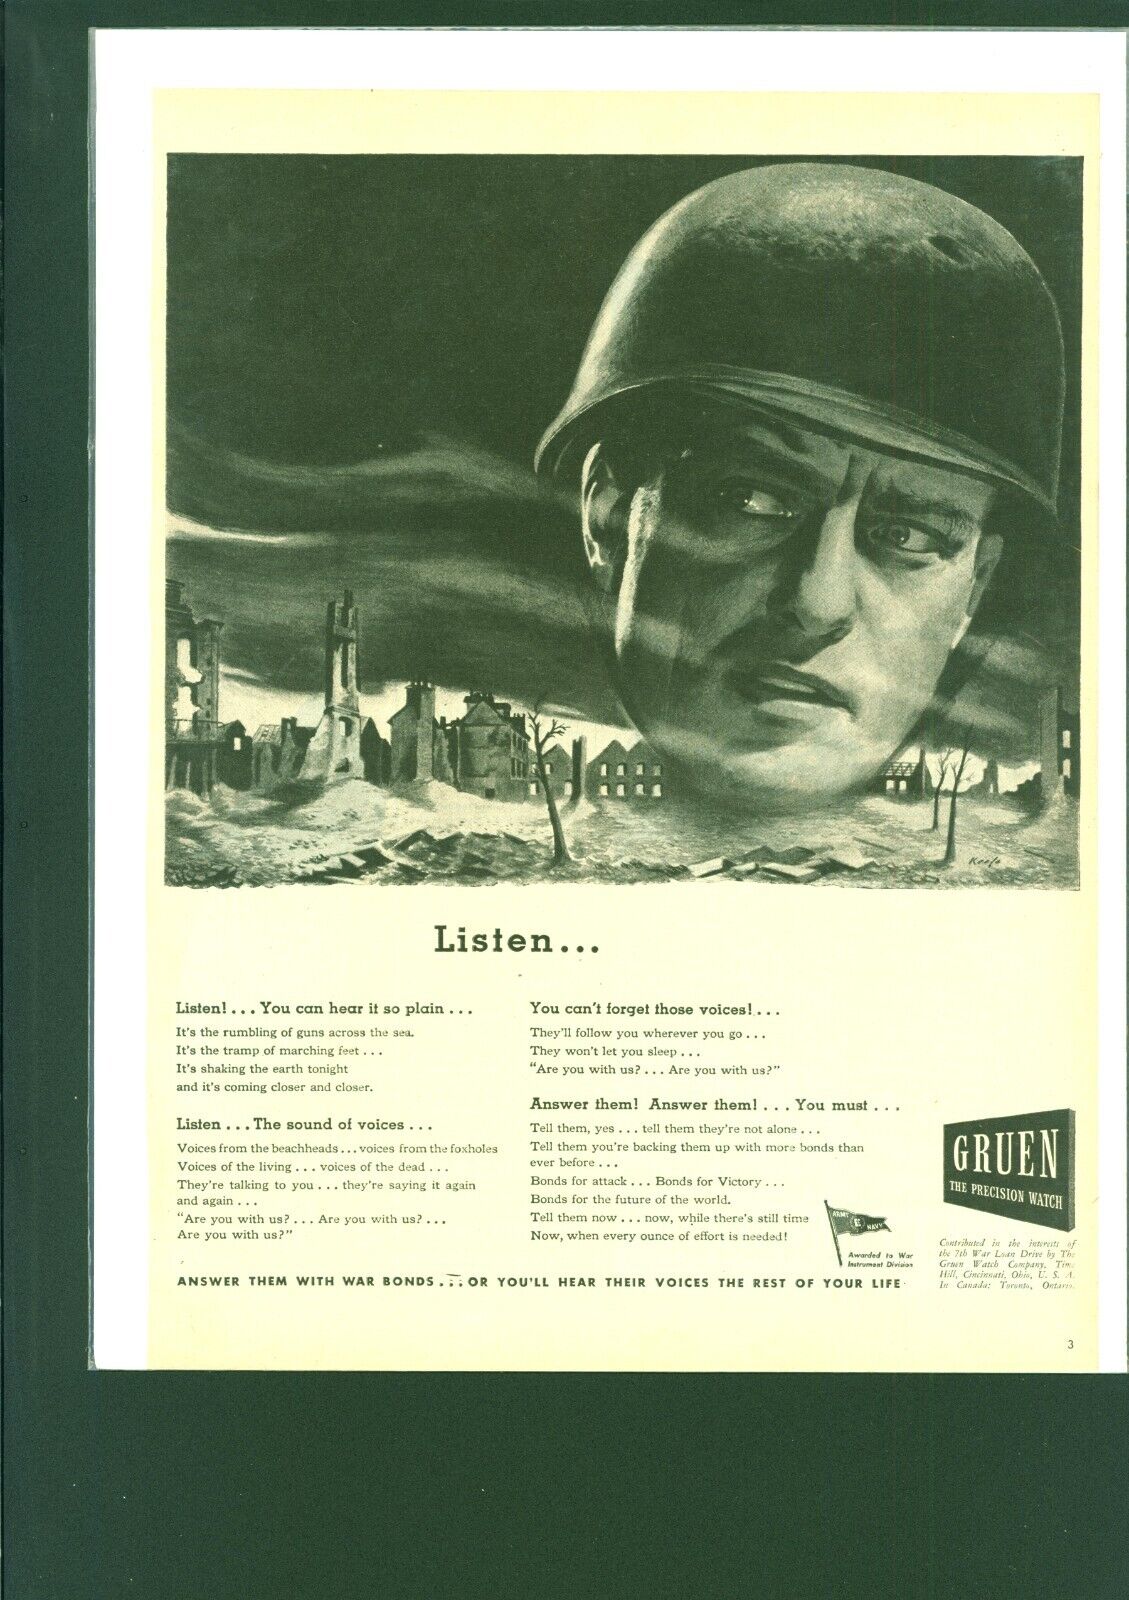 1945 WWII Vintage Gruen Watch Co Color  Print Ad Army War patriotic